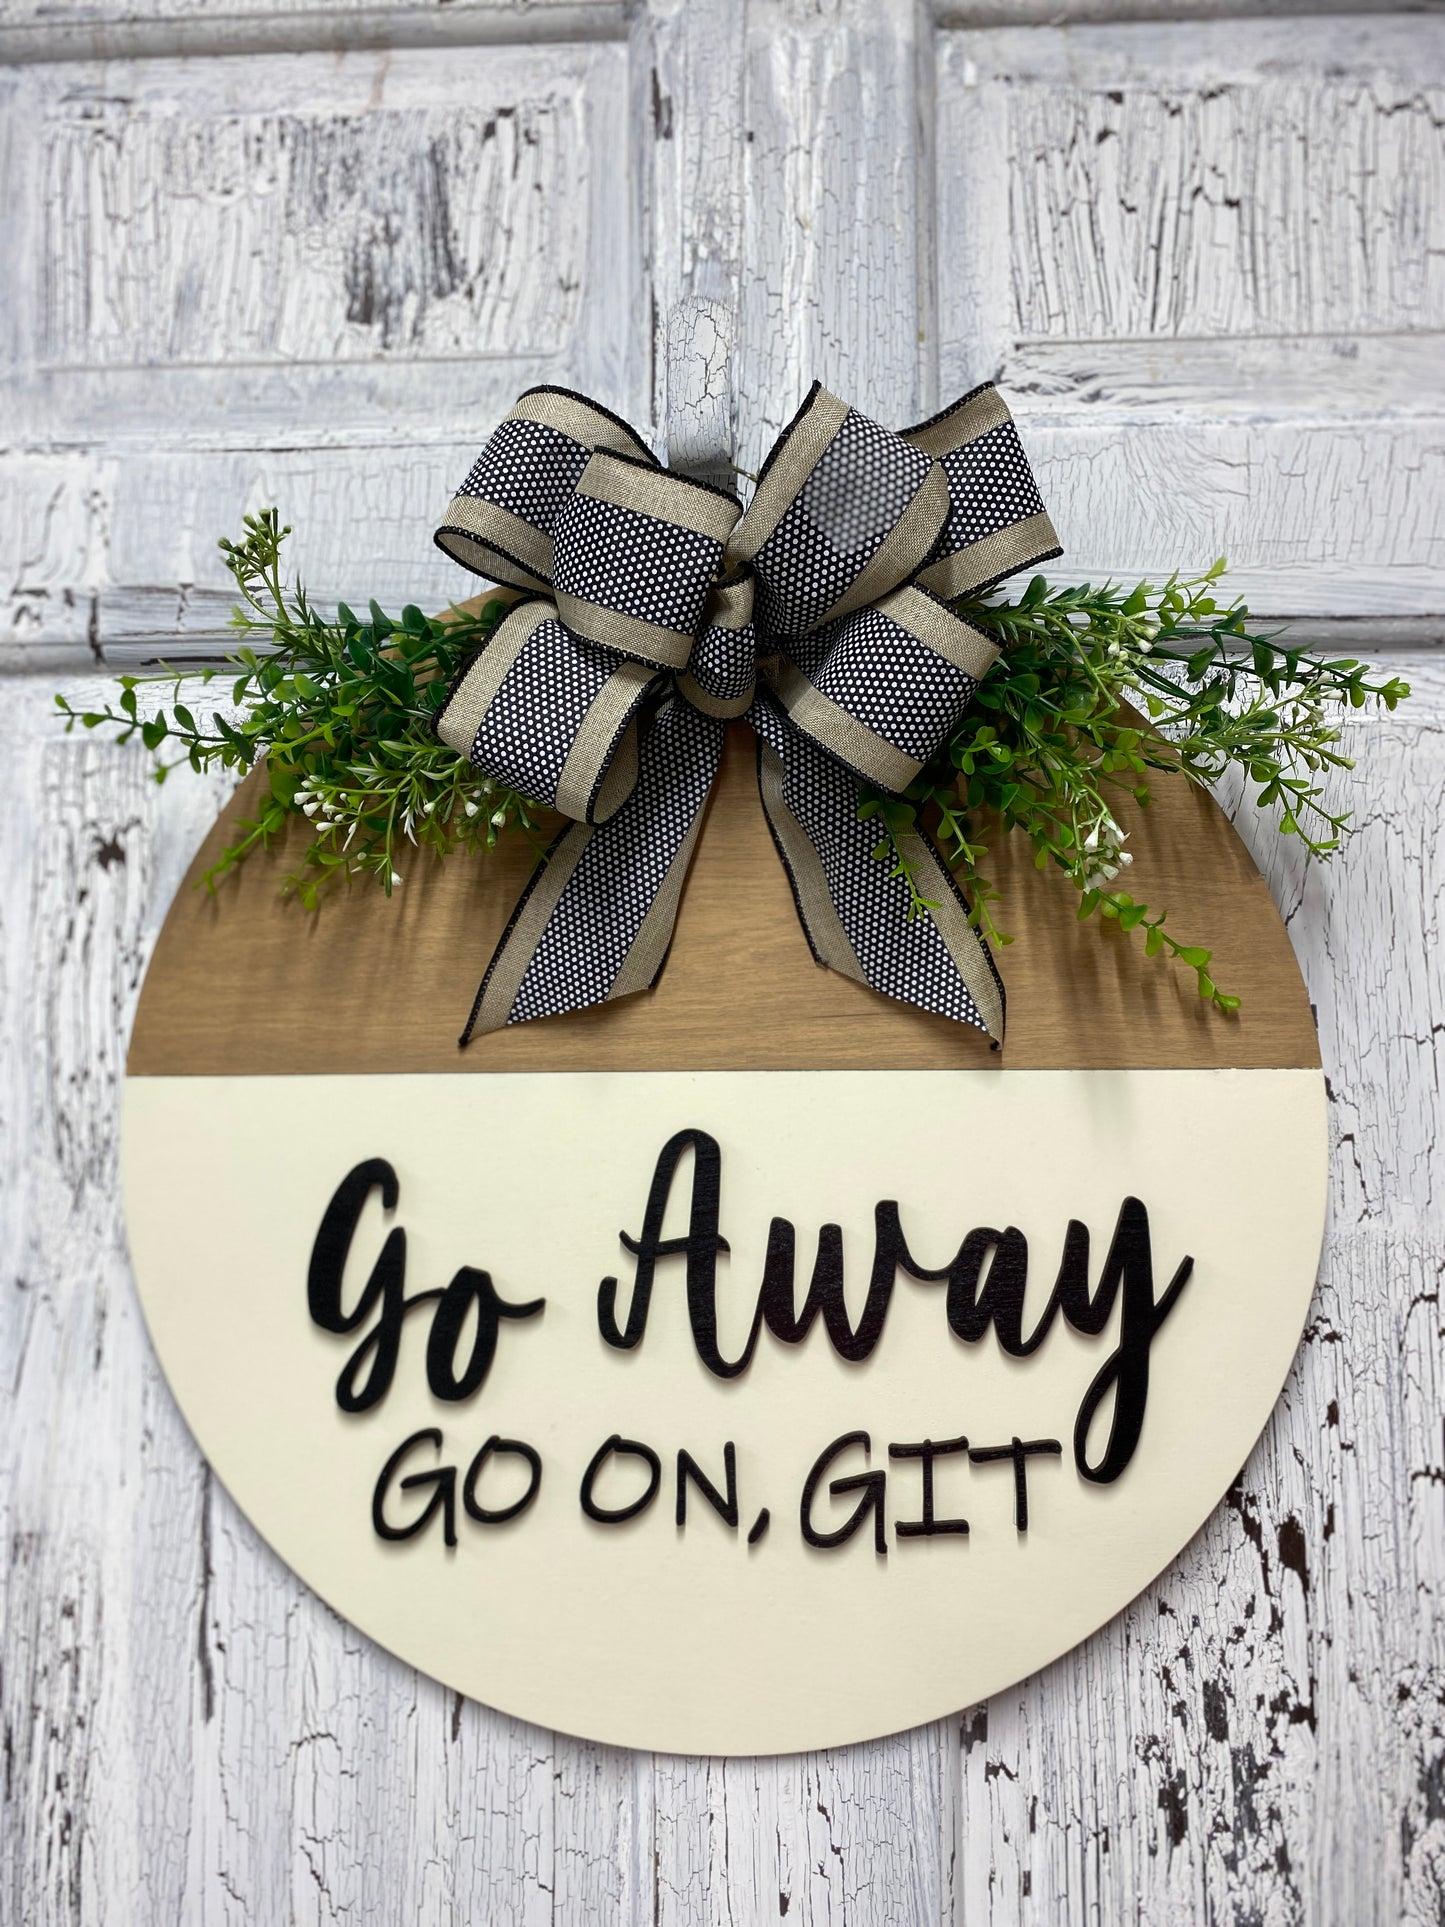 Go Away Go On Git Door Hanger Funny Greeting Wooden Door Wreath